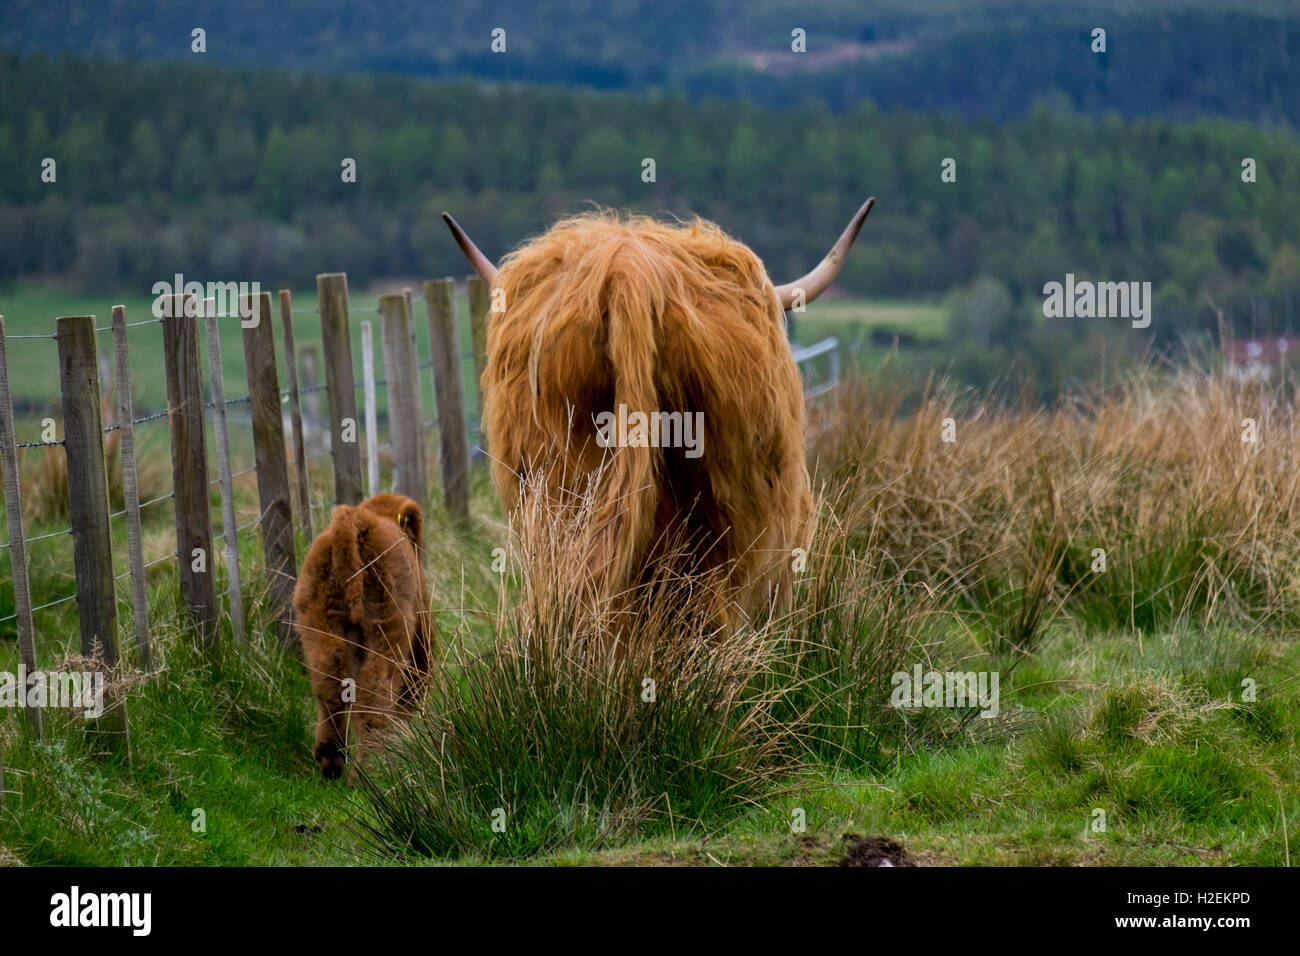 Highland cattle with calf, Argylle, Western Scotland, UK Stock Photo